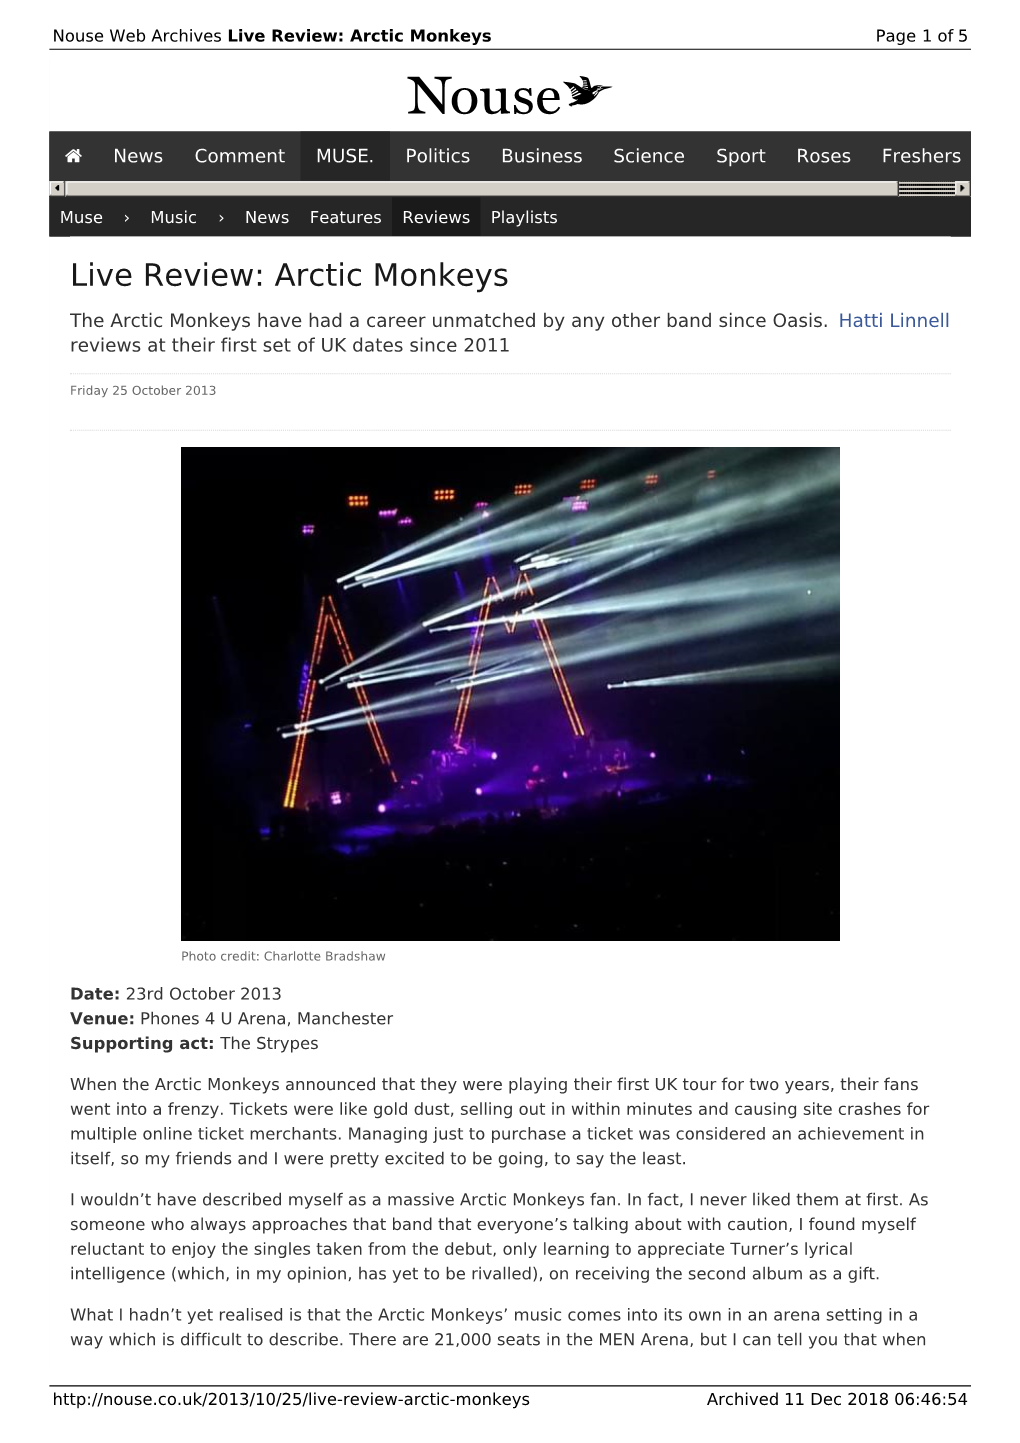 Live Review: Arctic Monkeys | Nouse